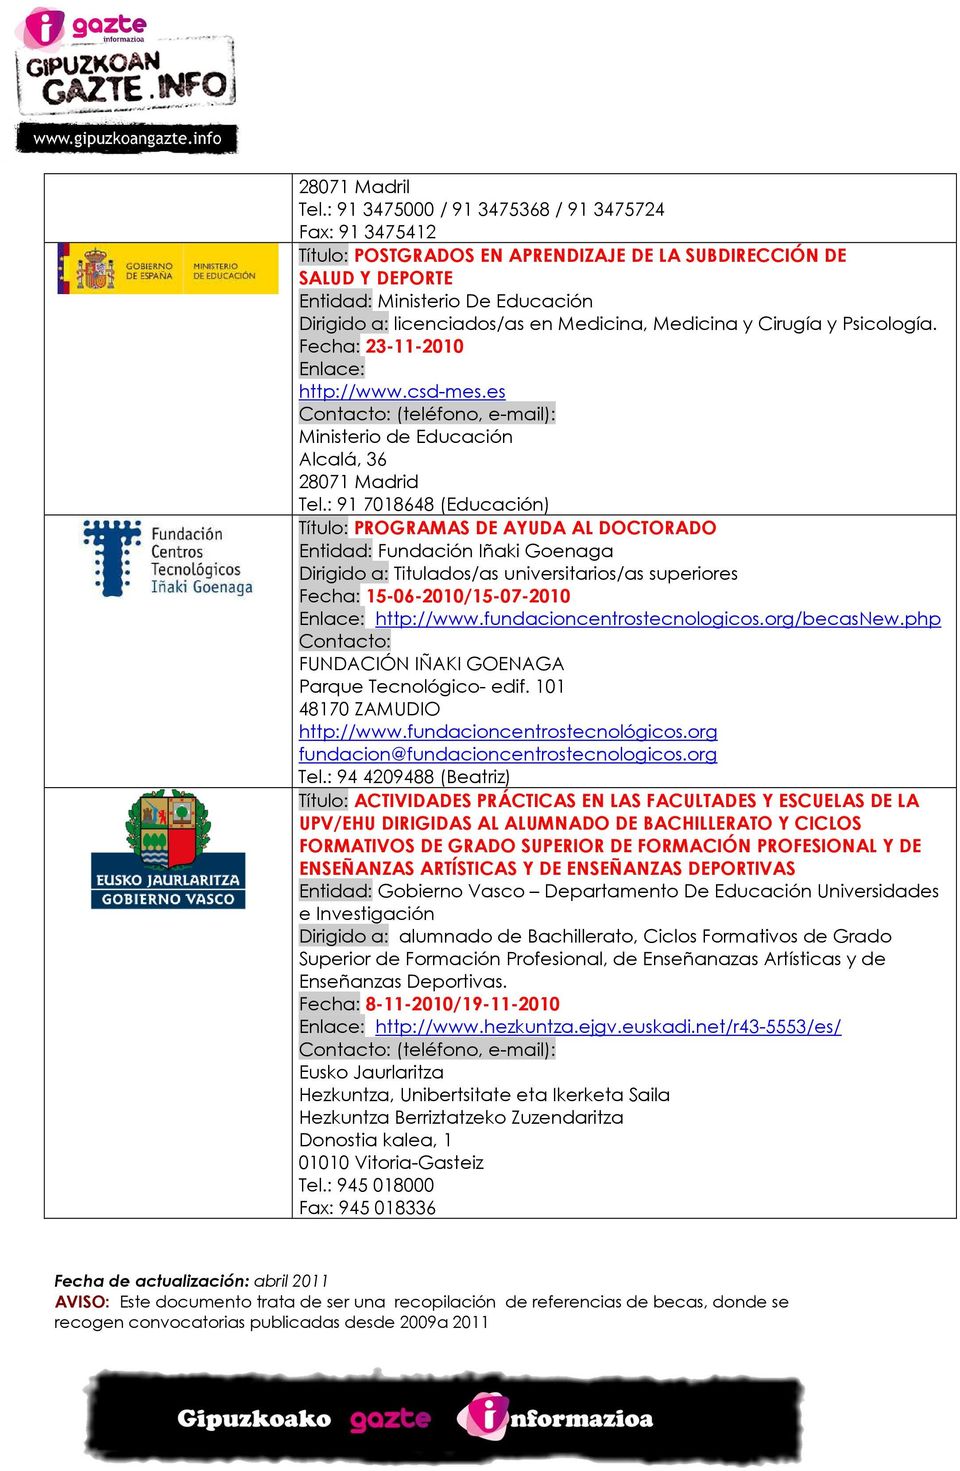 Psicología. Fecha: 23-11-2010 http://www.csd-mes.es Ministerio de Educación Alcalá, 36 28071 Madrid Tel.